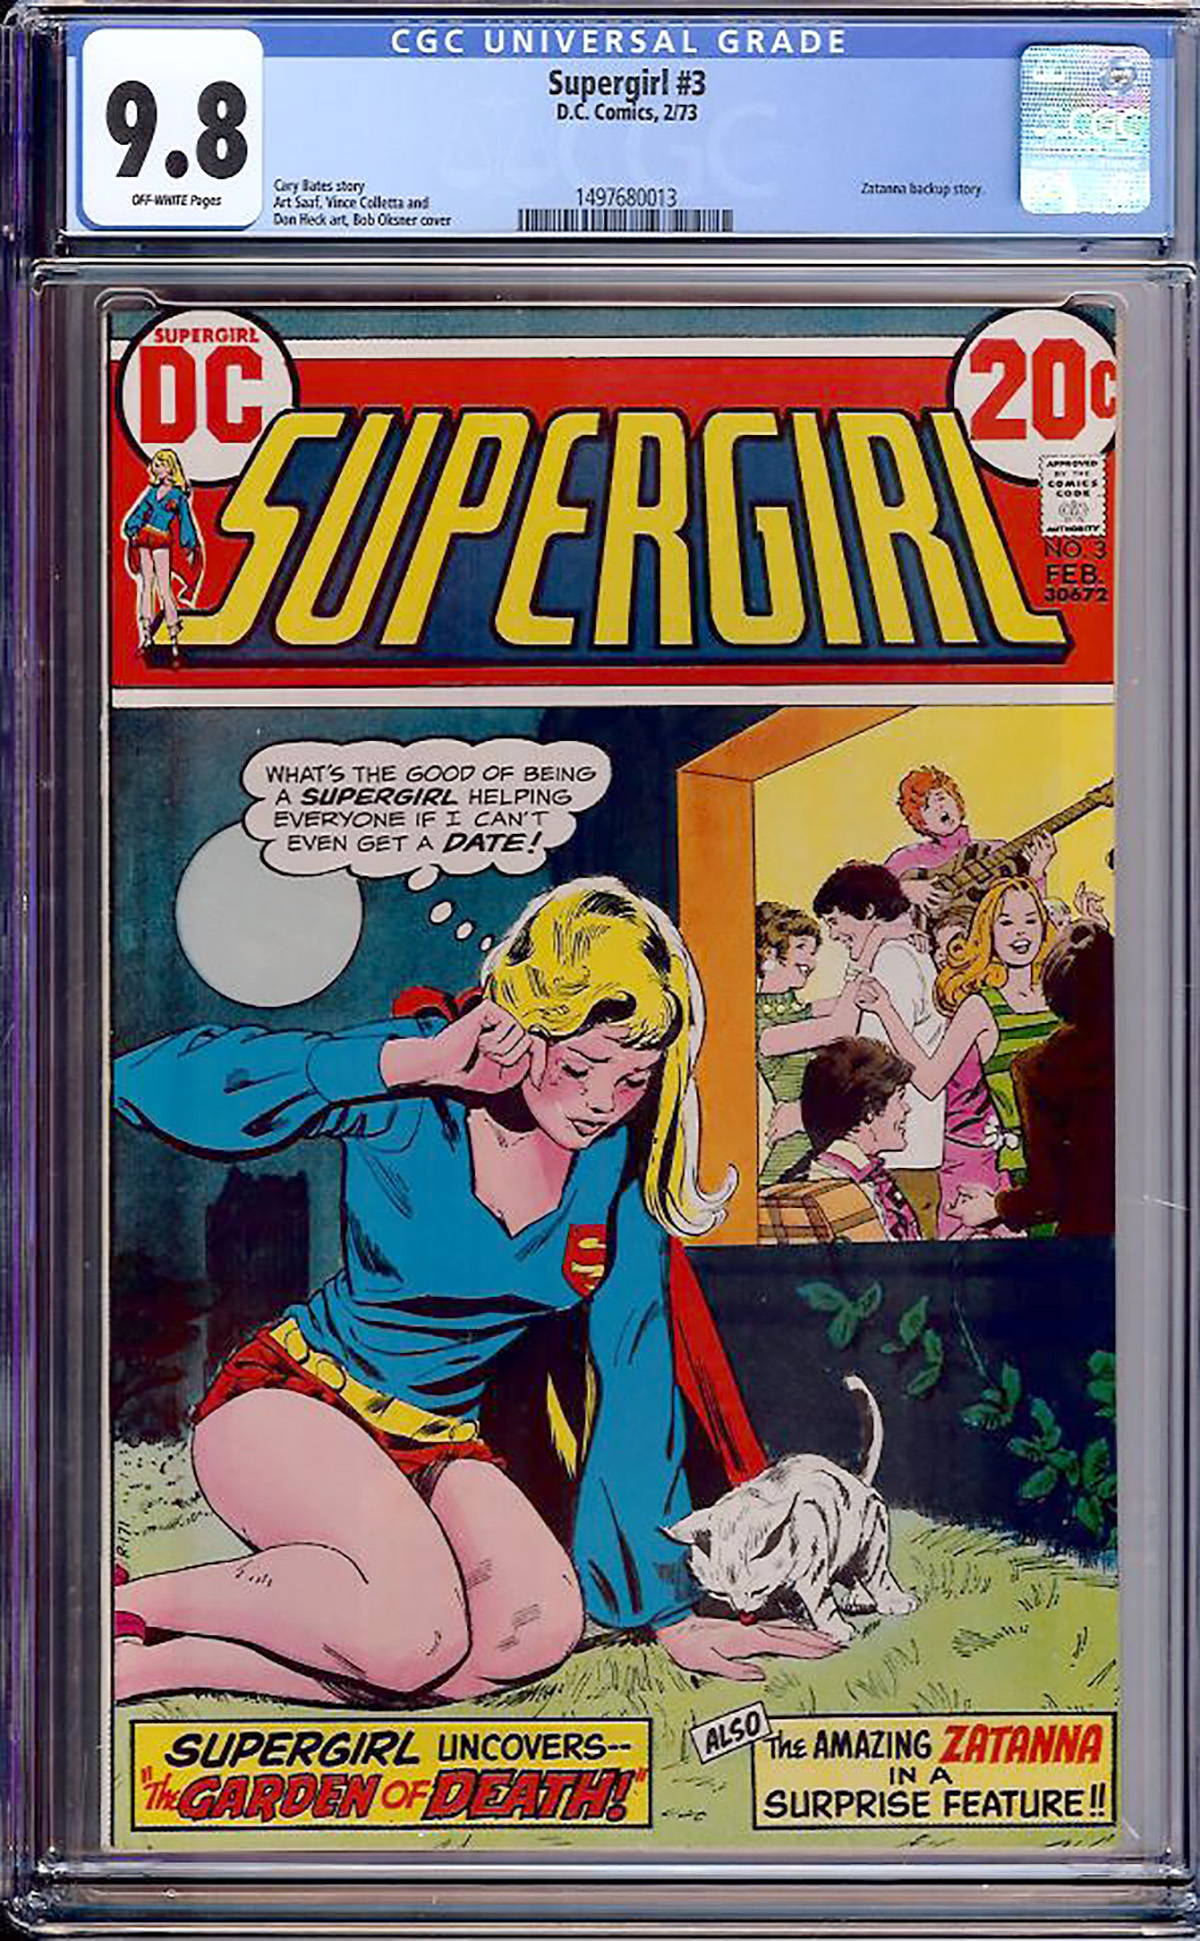 Supergirl #3 CGC 9.8 ow